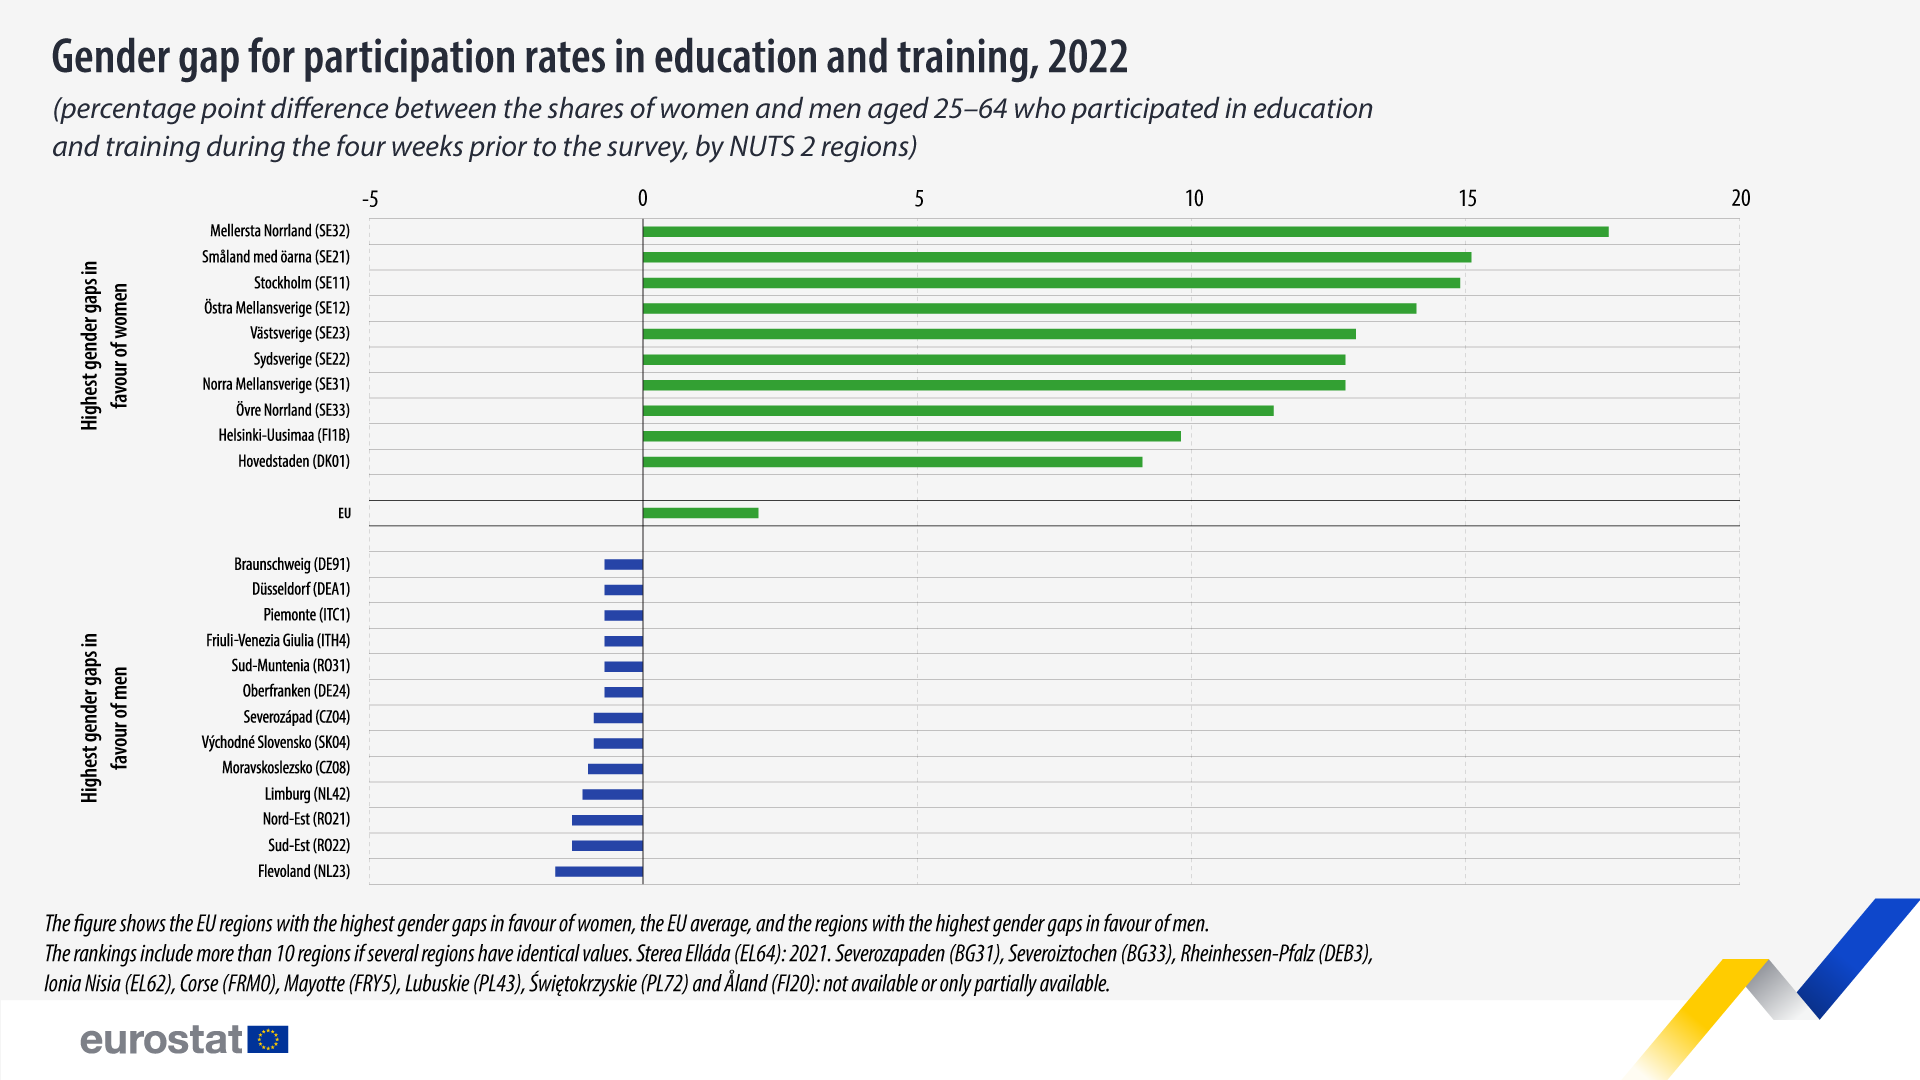 Diagramă cu bare orizontale: diferența de gen pentru ratele de participare la educație și formare, 2022 (diferența de puncte procentuale între ponderile femeilor și bărbaților cu vârsta cuprinsă între 25 și 64 de ani care au participat la educație și formare în cele patru săptămâni anterioare sondajului, pe regiuni NUTS 2)